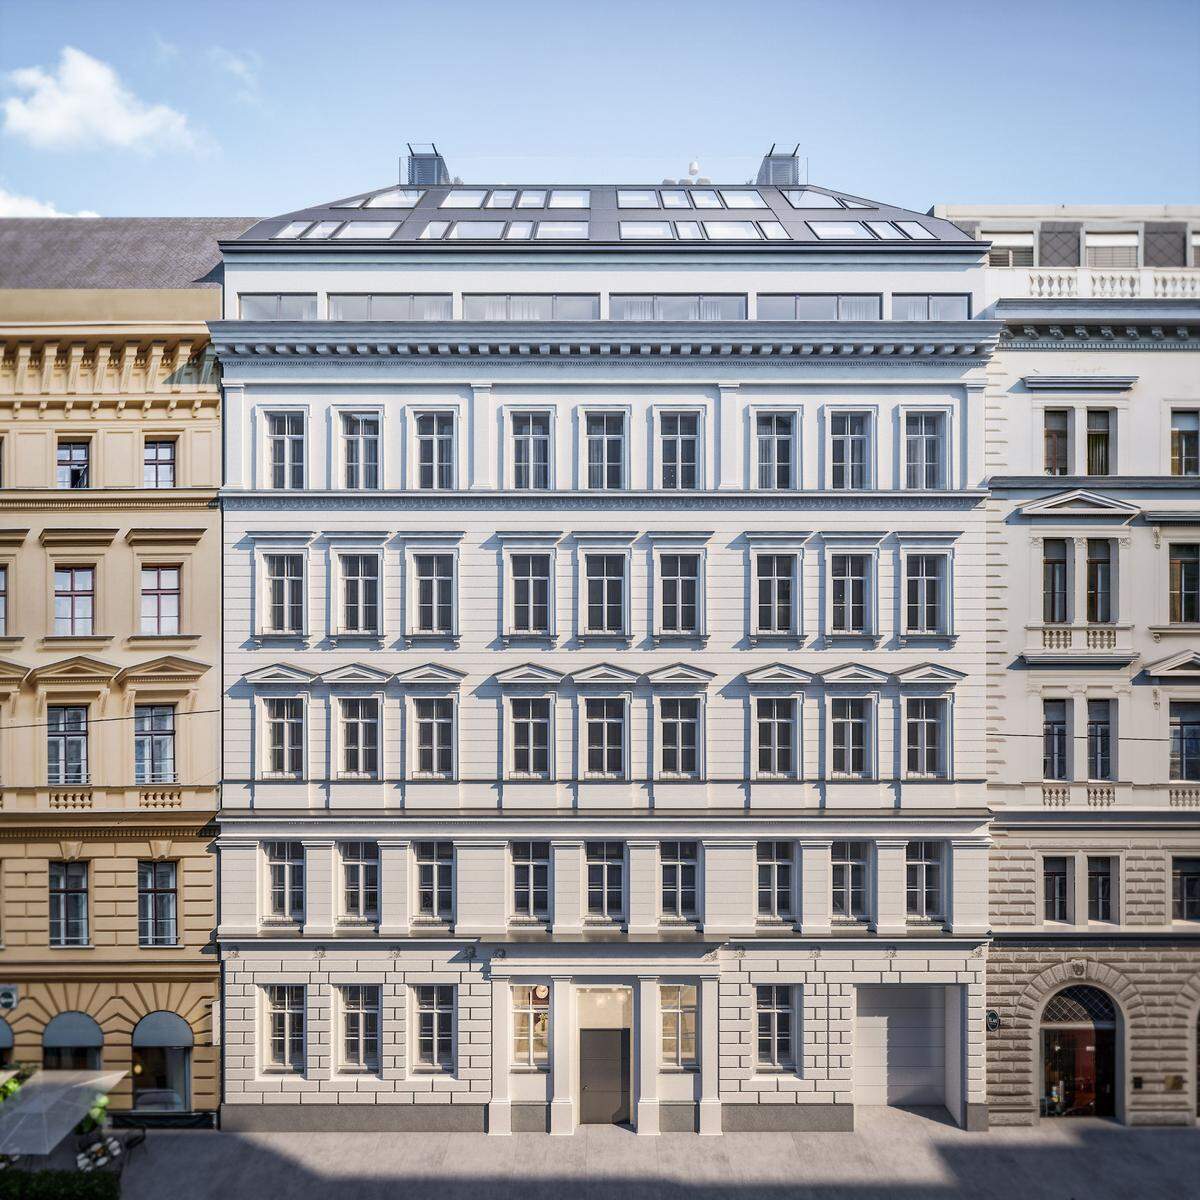 Das Gebäude in der Werdertorgasse 6 ("Werder Six") des Bauträgers "Werdertorgasse 6 GesmbH und Co KG" wurde 1876 erbaut und diente anfangs als Volksschule, in jüngster Vergangenheit war es Verwaltungsgebäude der Stadt Wien und beherbergte Büros und Wohnungen.